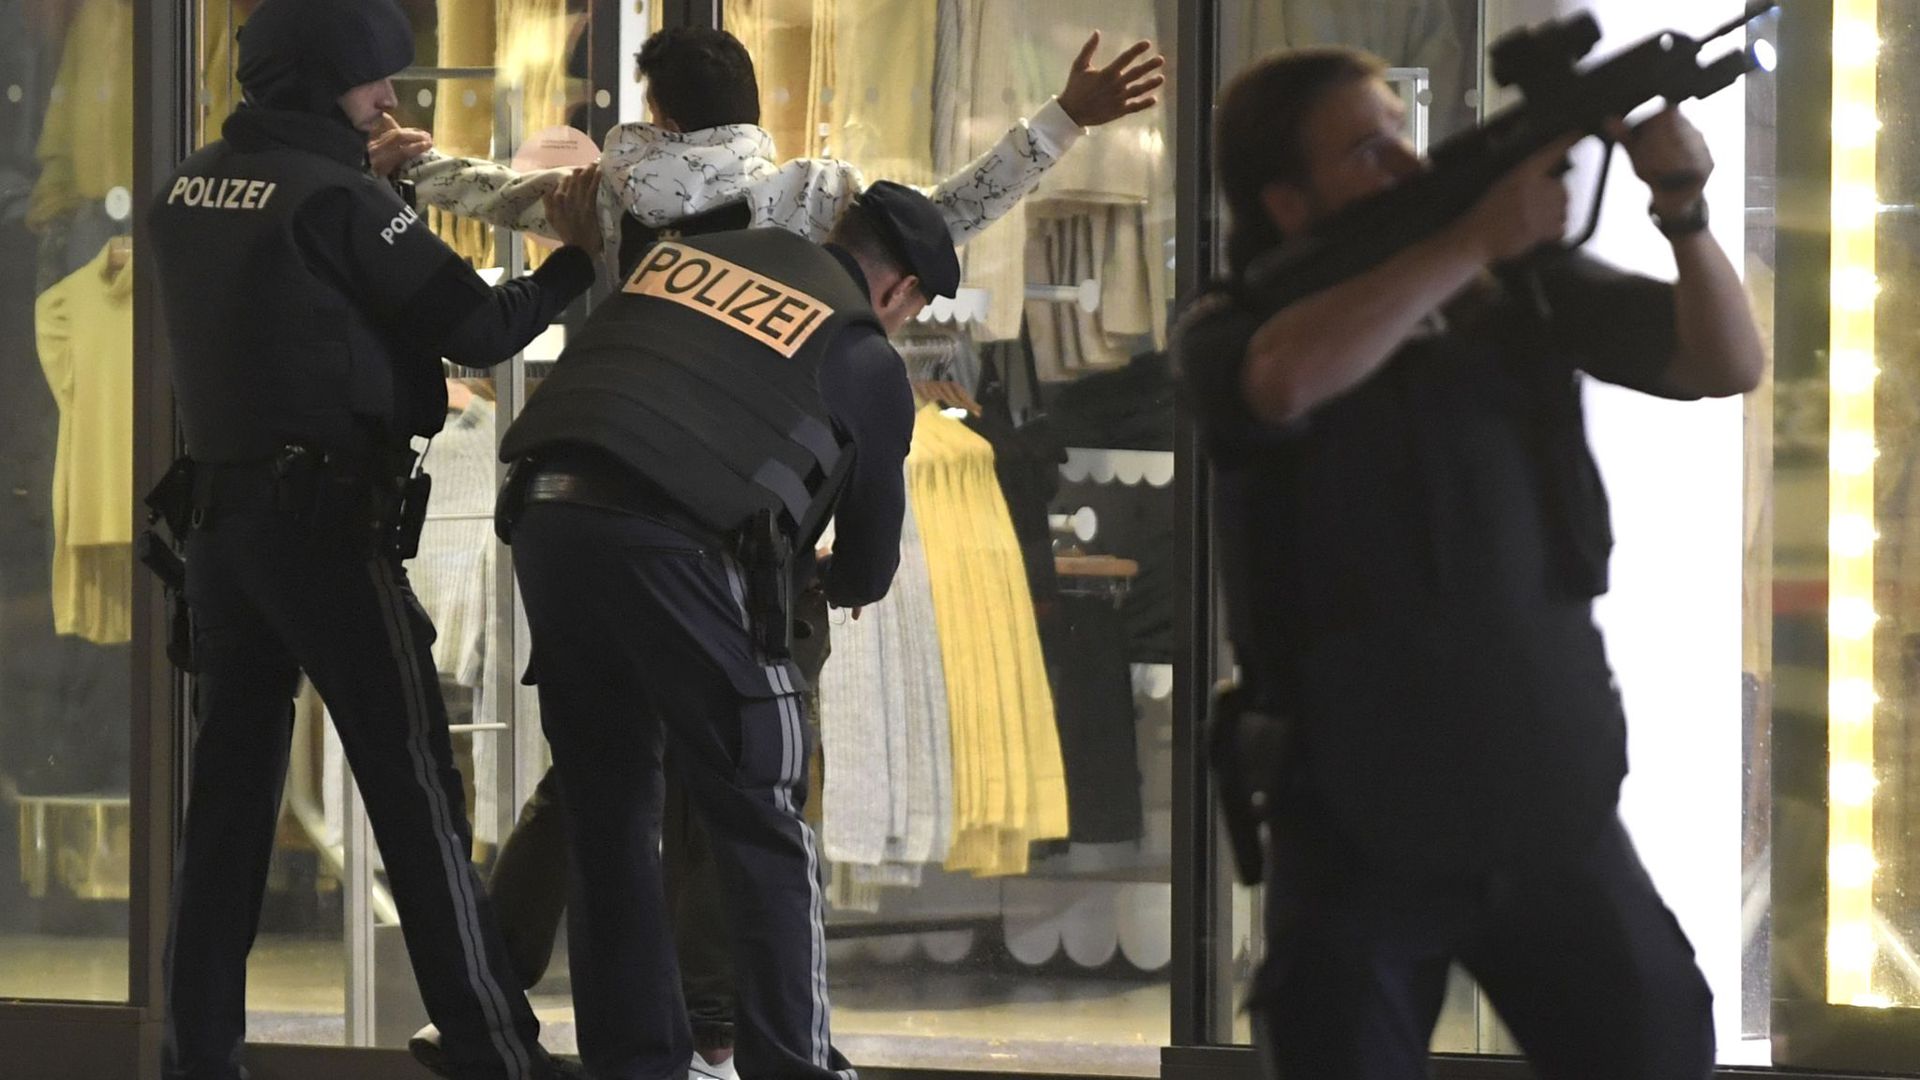 Schwerbewaffnete Polizisten kontrollieren in der Wiener Innenstadt eine Person.